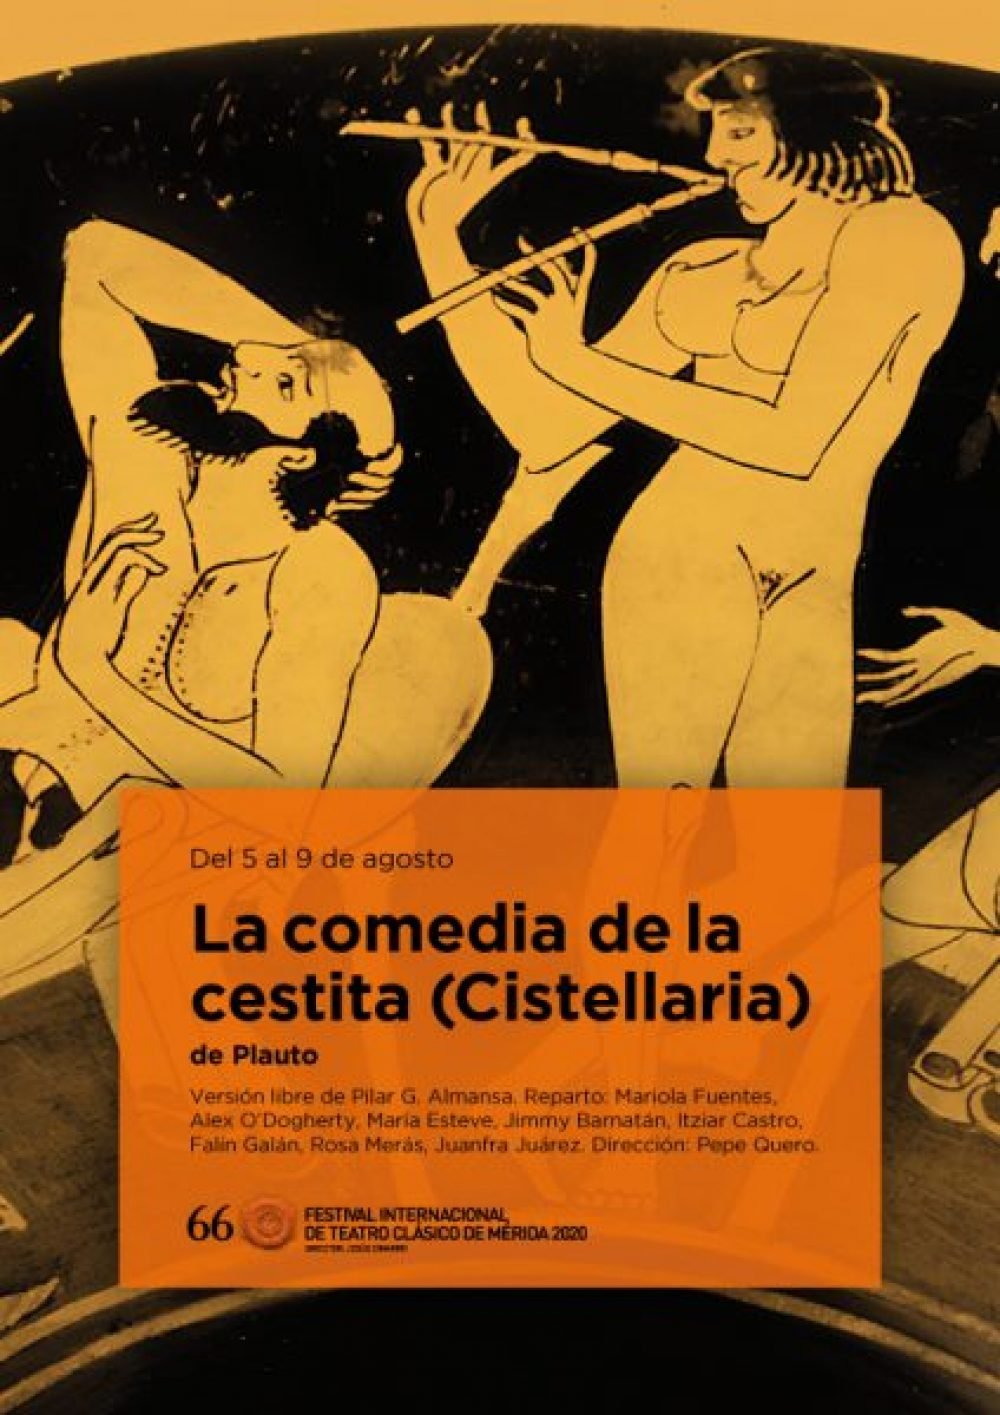 La comedia de la cestita (Cistellaria).  Festival Internacional de Teatro Clásico de Mérida